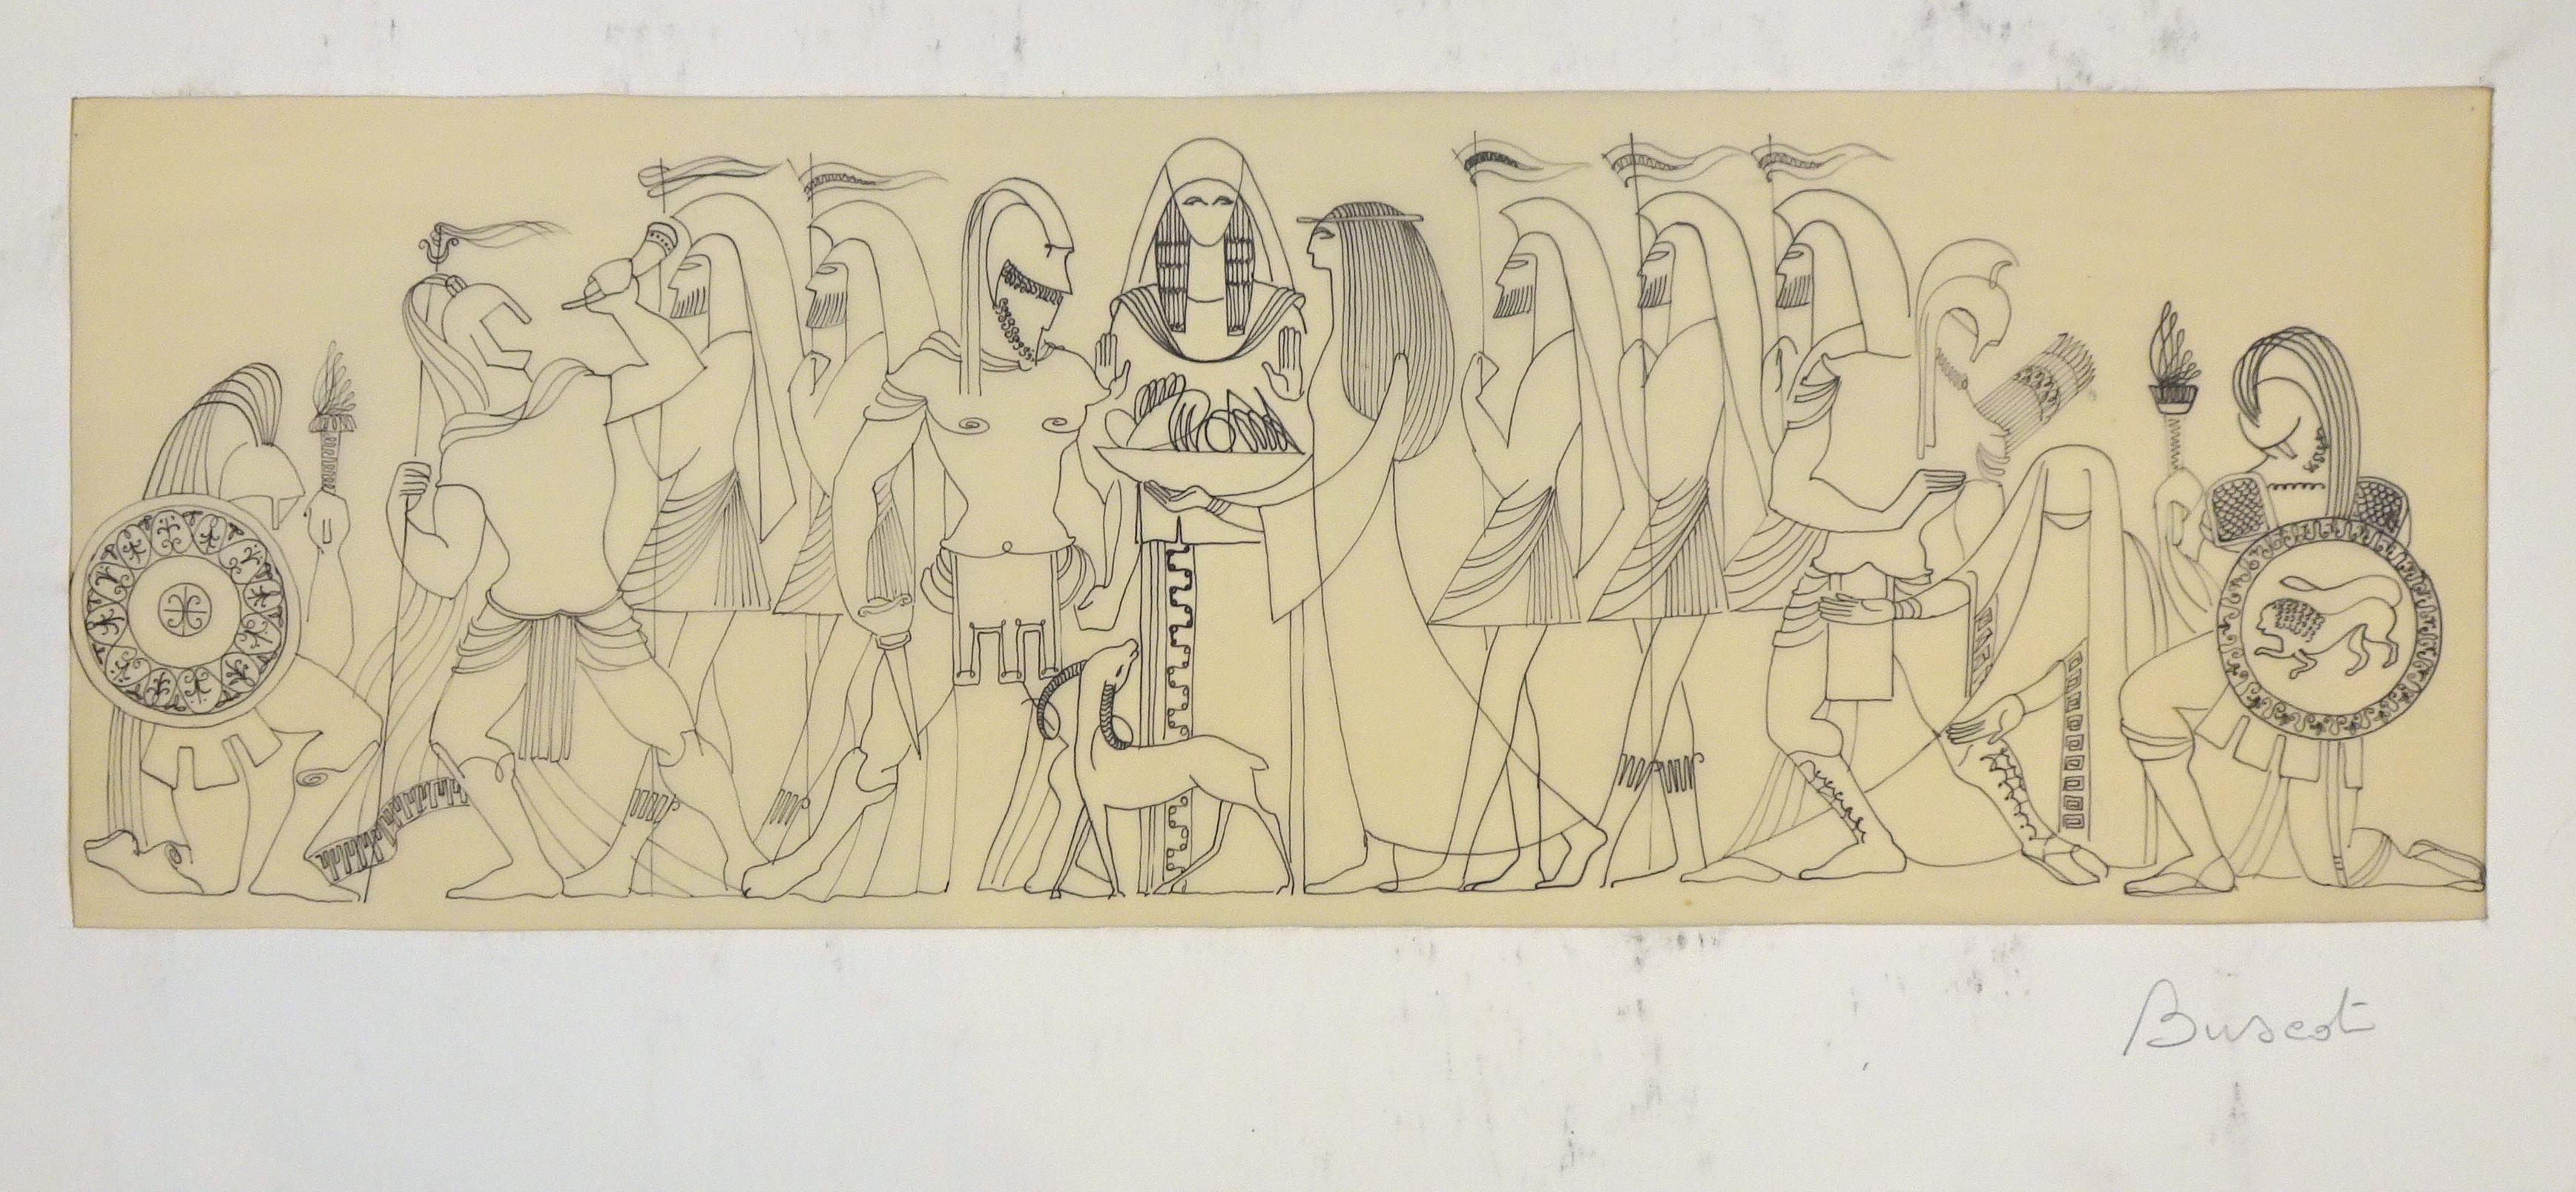 Mythologische Szene – Original Tintenzeichnung auf Pergament von Buscot 